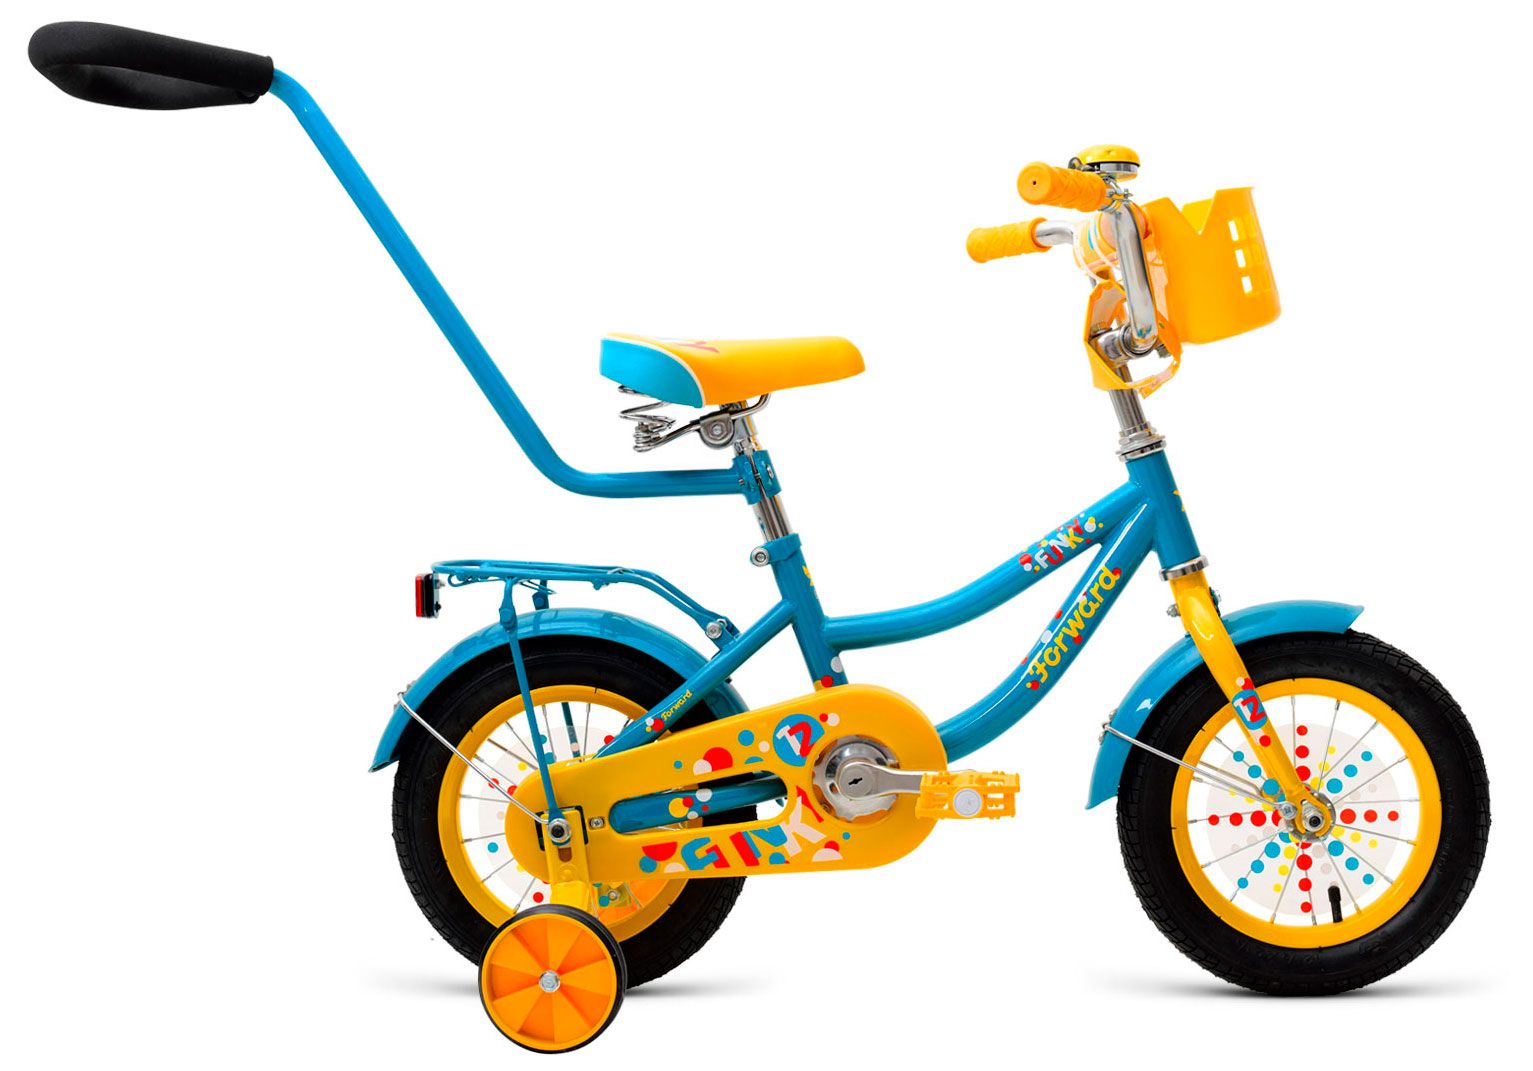  Отзывы о Трехколесный детский велосипед Forward Funky 12 2018